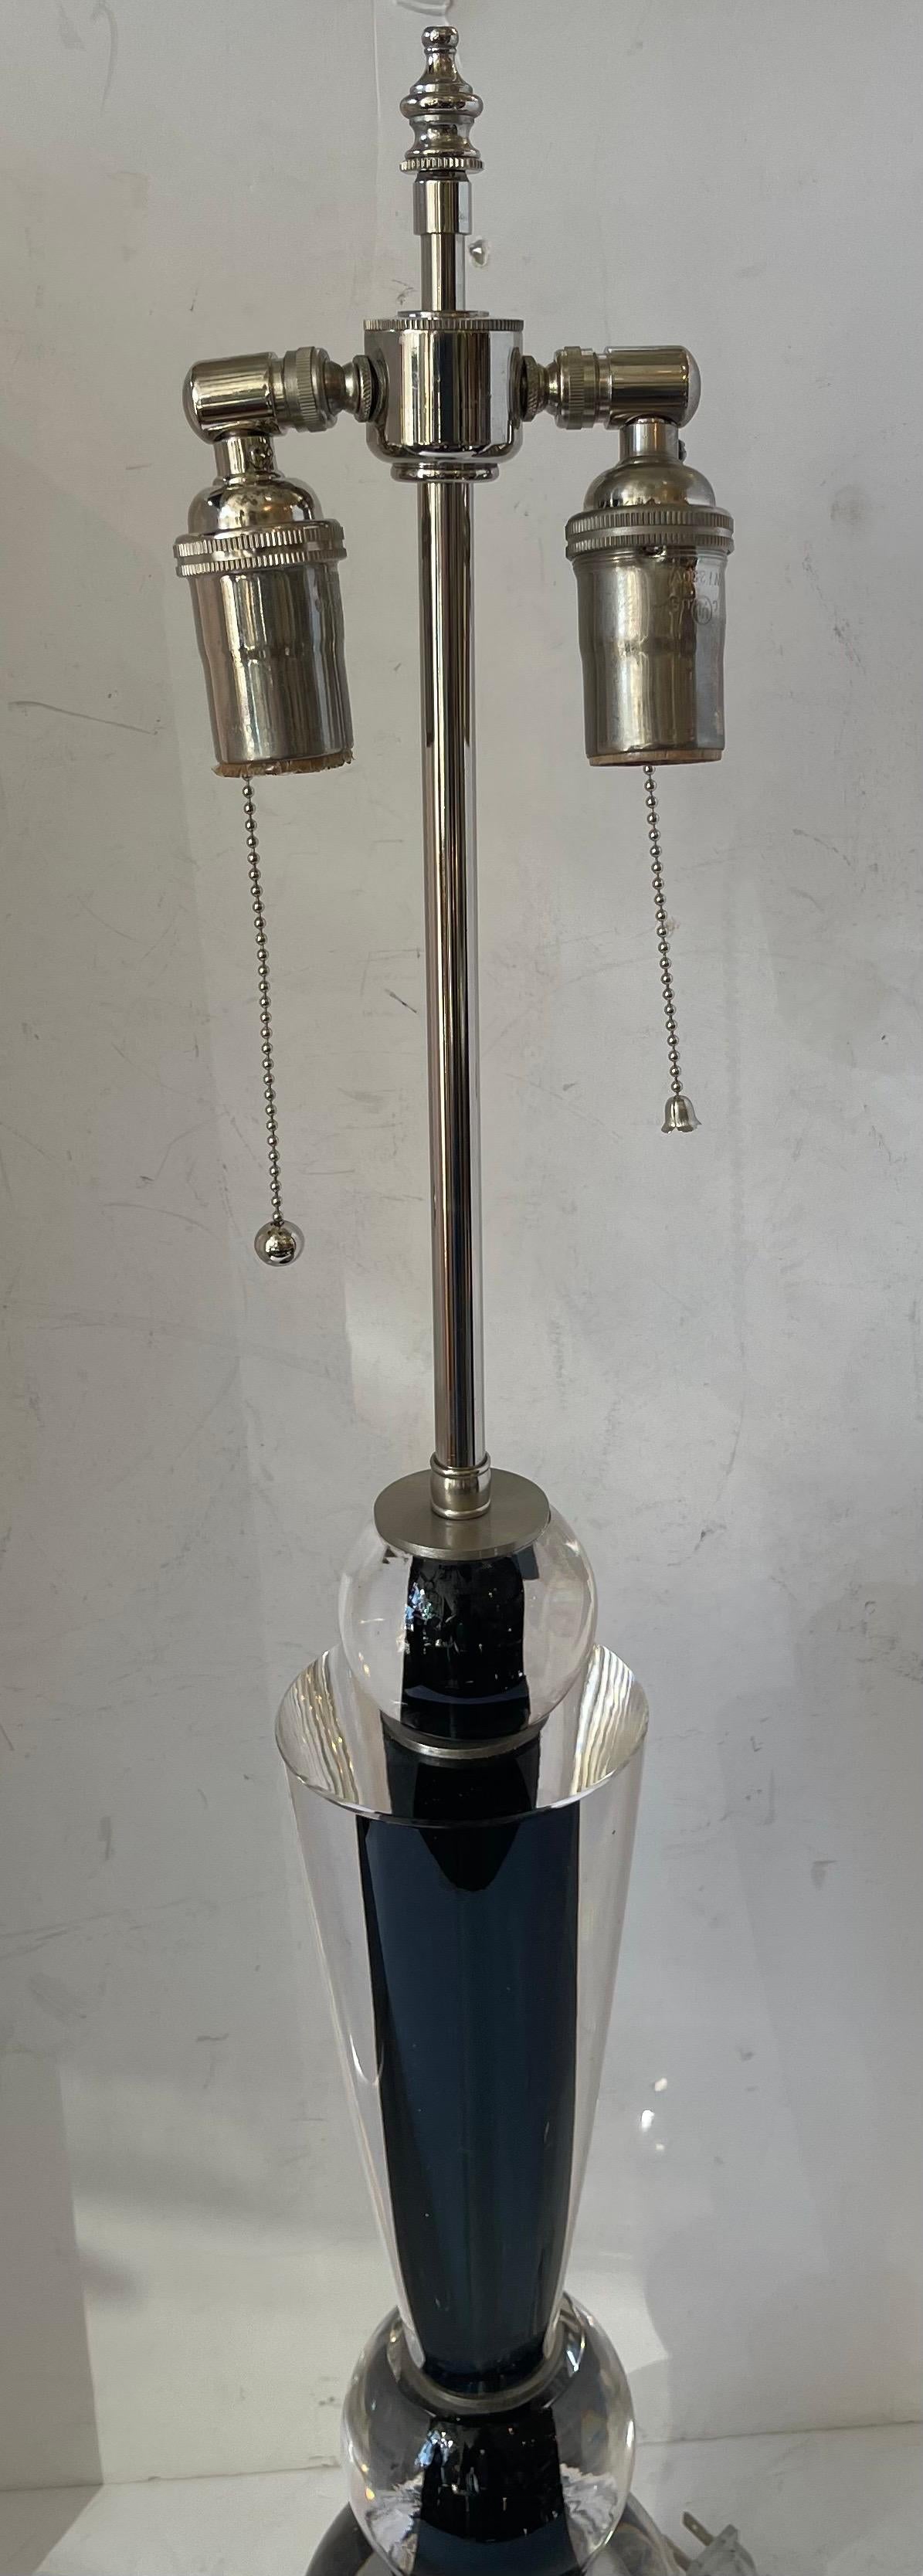 Eine wunderbare Mid Century Modern Murano / venezianischen Lorin Marsh Schwarz Klarglas Tischlampe Rewired mit zwei Edison Nickel-Fassungen.
Original Showroom Aufkleber noch mit Inventar-Nummer 4859210 angebracht
Der ursprüngliche Aufkleber Preis